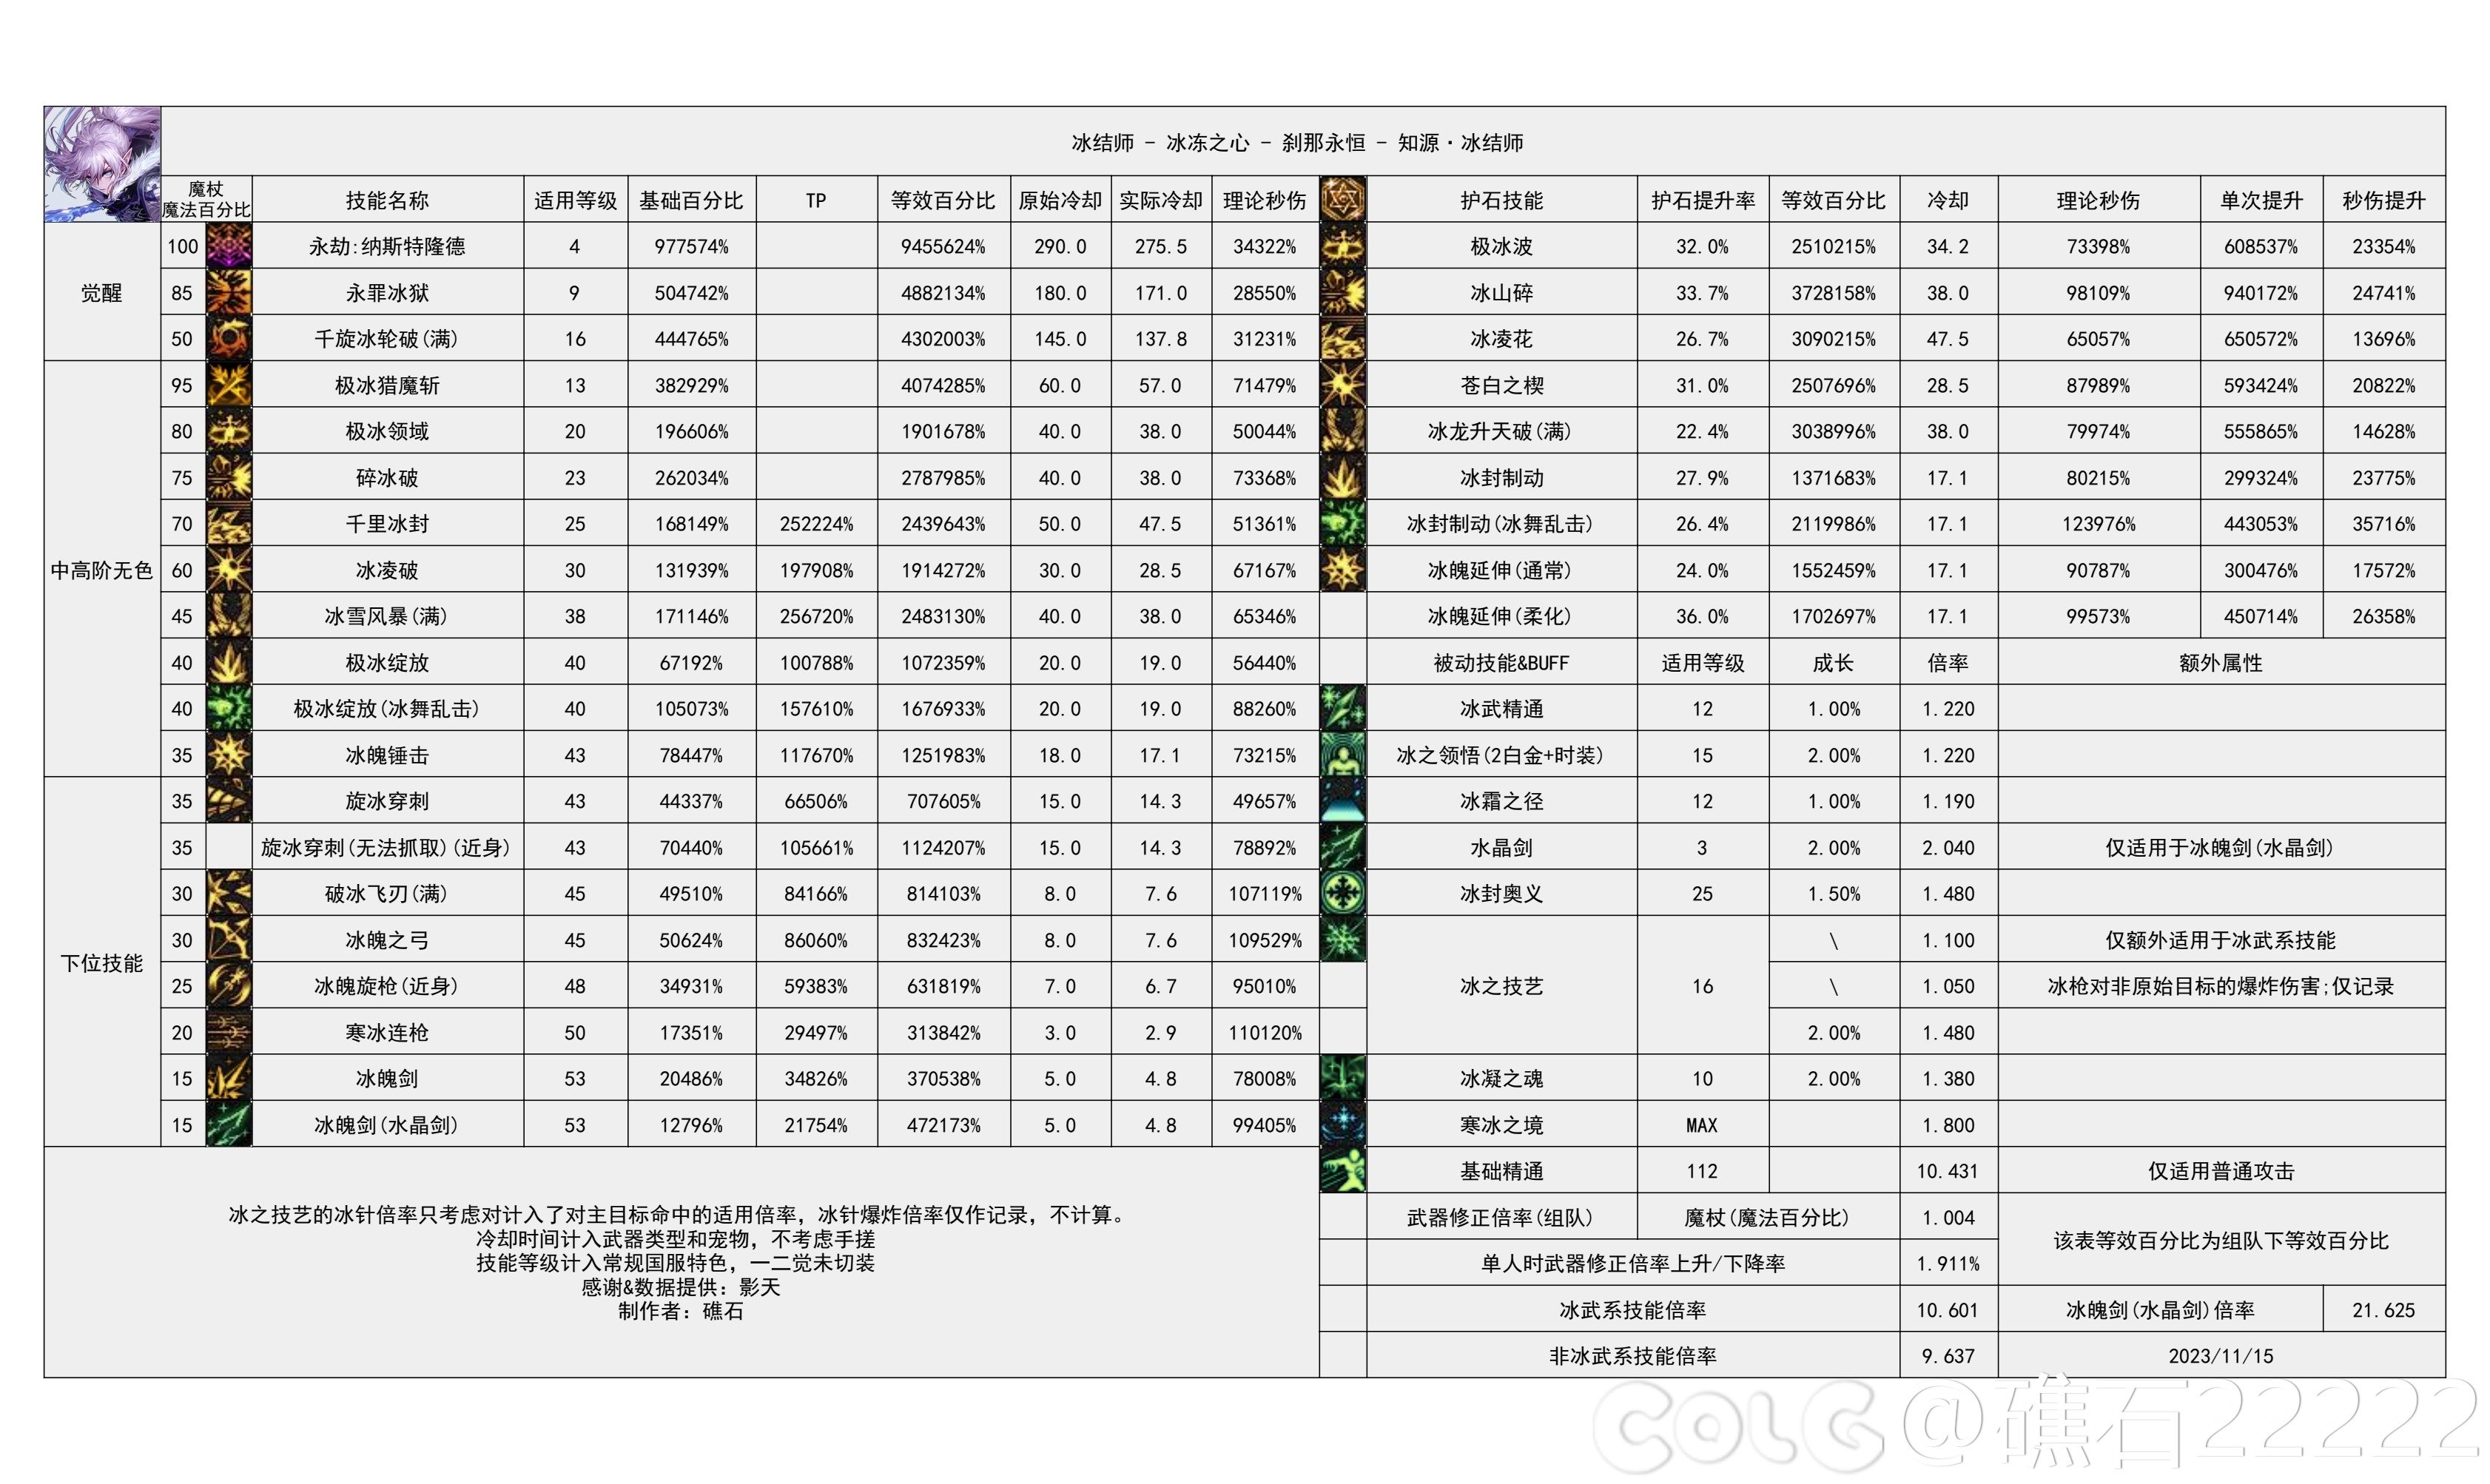 【国服现状】110版本输出职业数据表(国正1.11)(存档)39